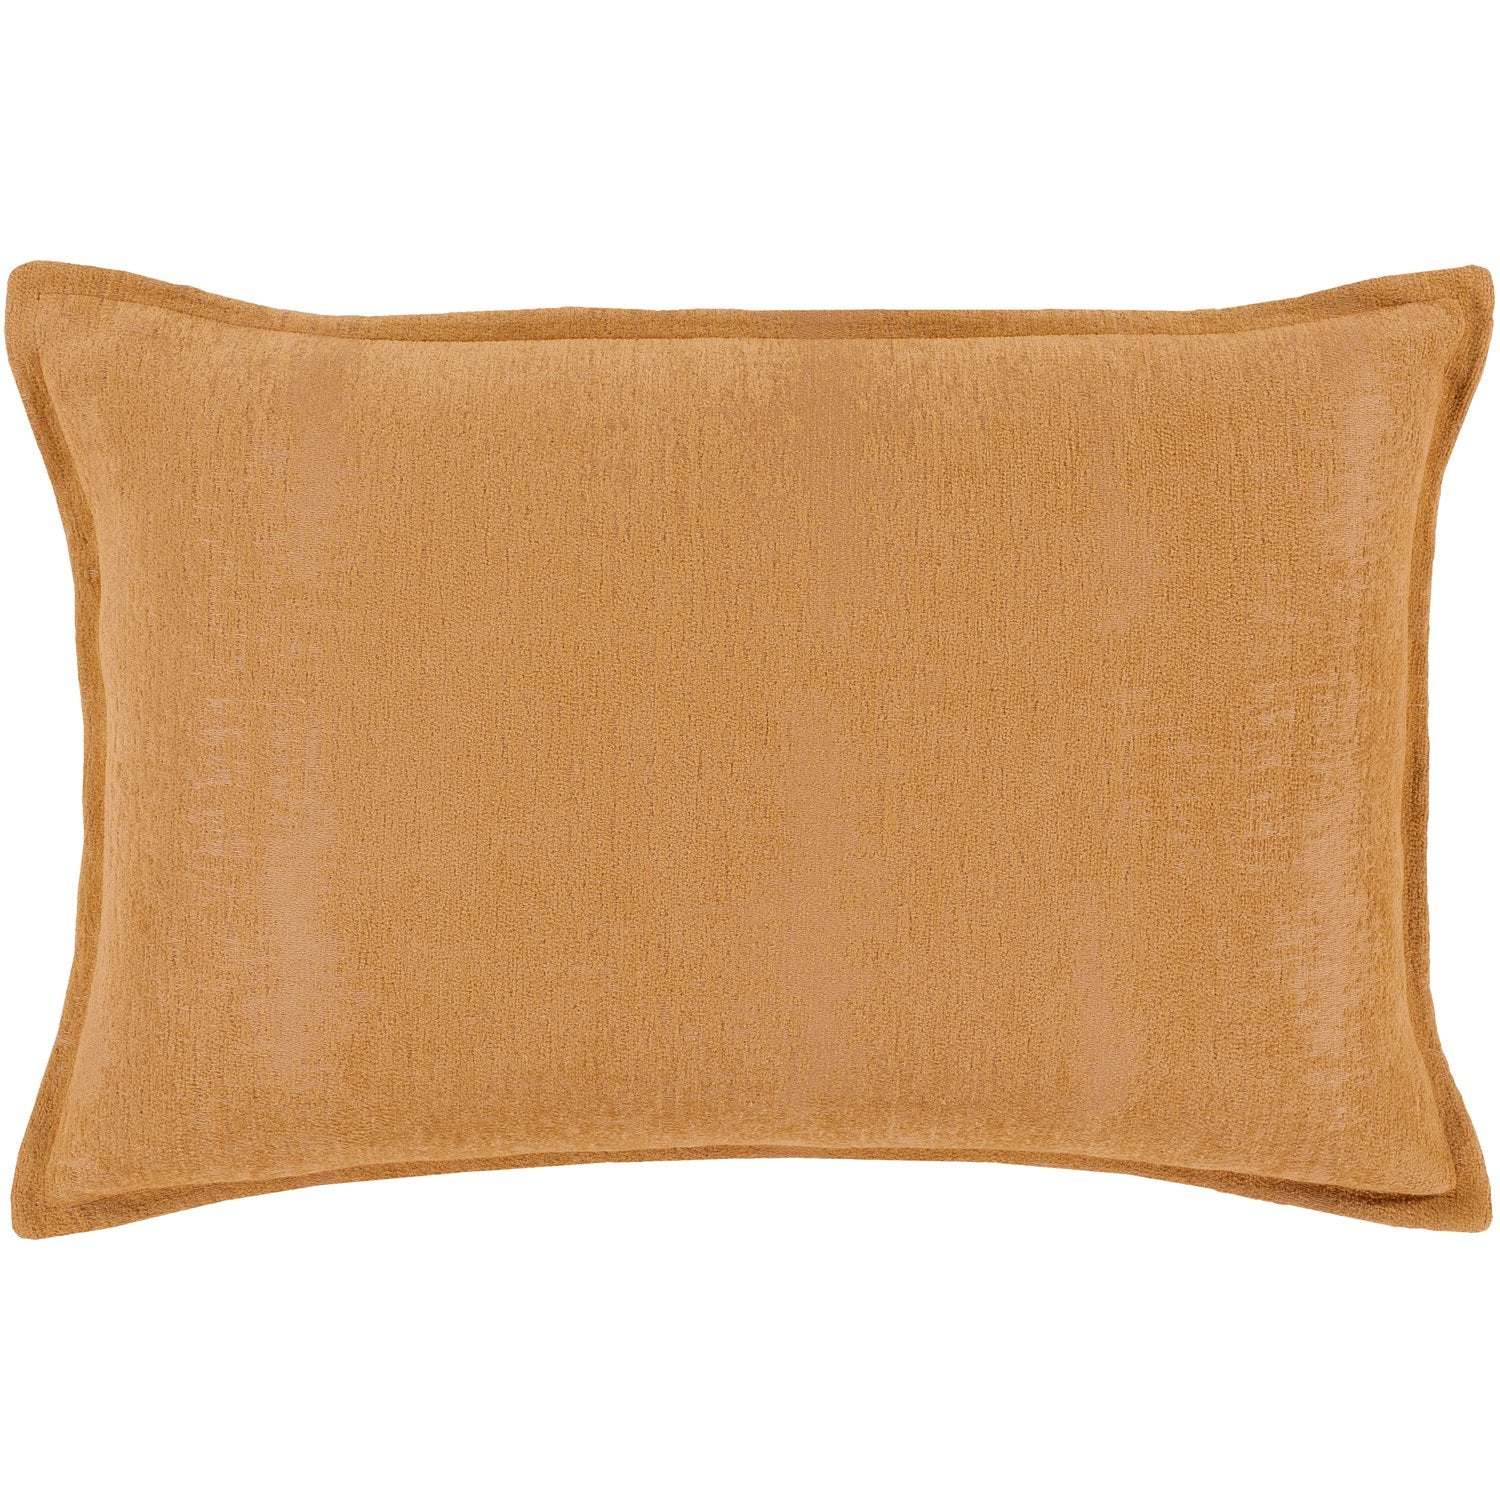 Shop Copacetic Woven Pillow in Saffron | Burke Decor